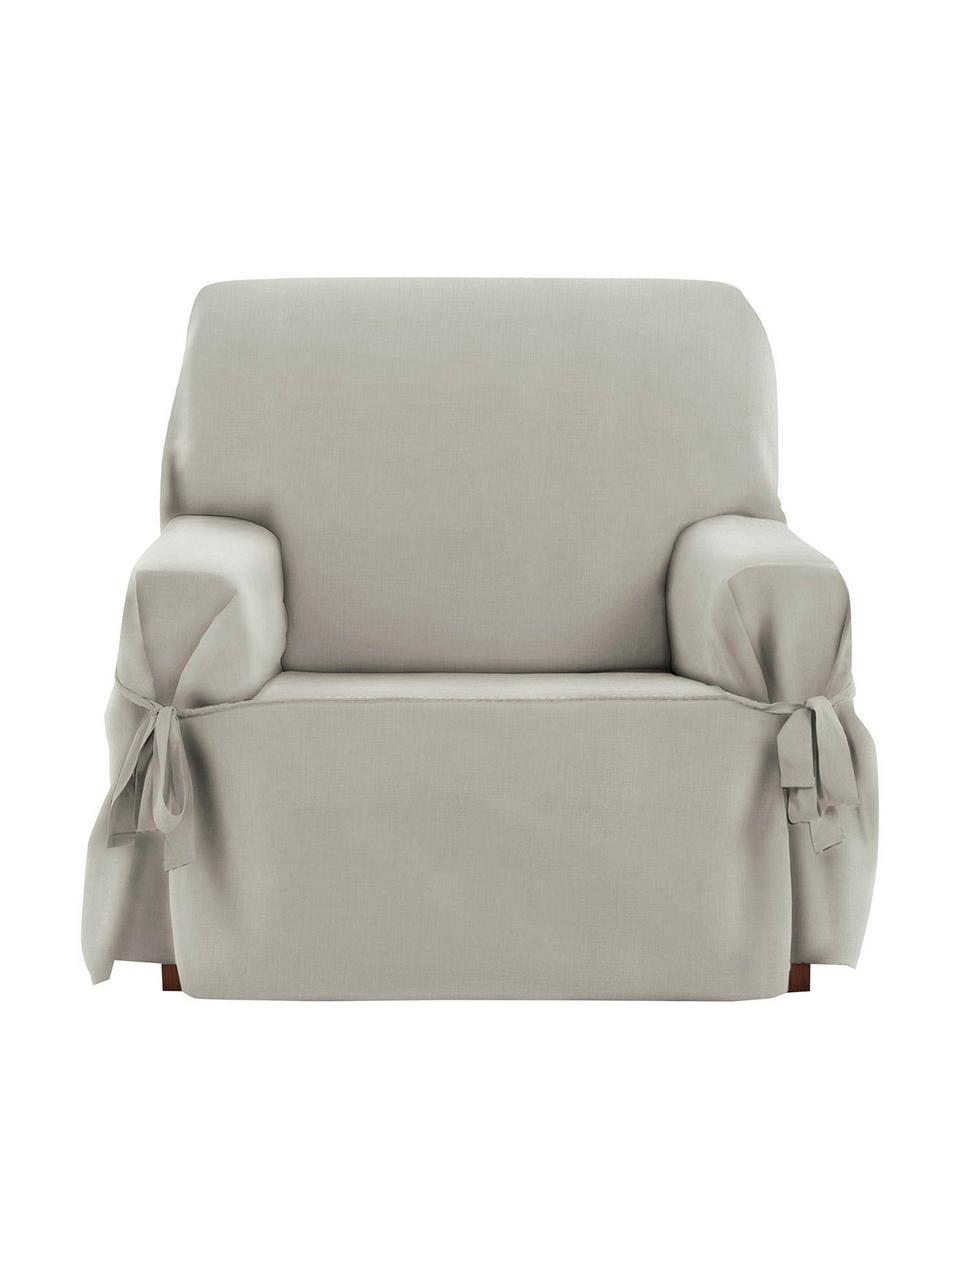 Pokrowiec na fotel Levante, 65% bawełna, 35% poliester, Szarozielony, S 110 x G 110 cm